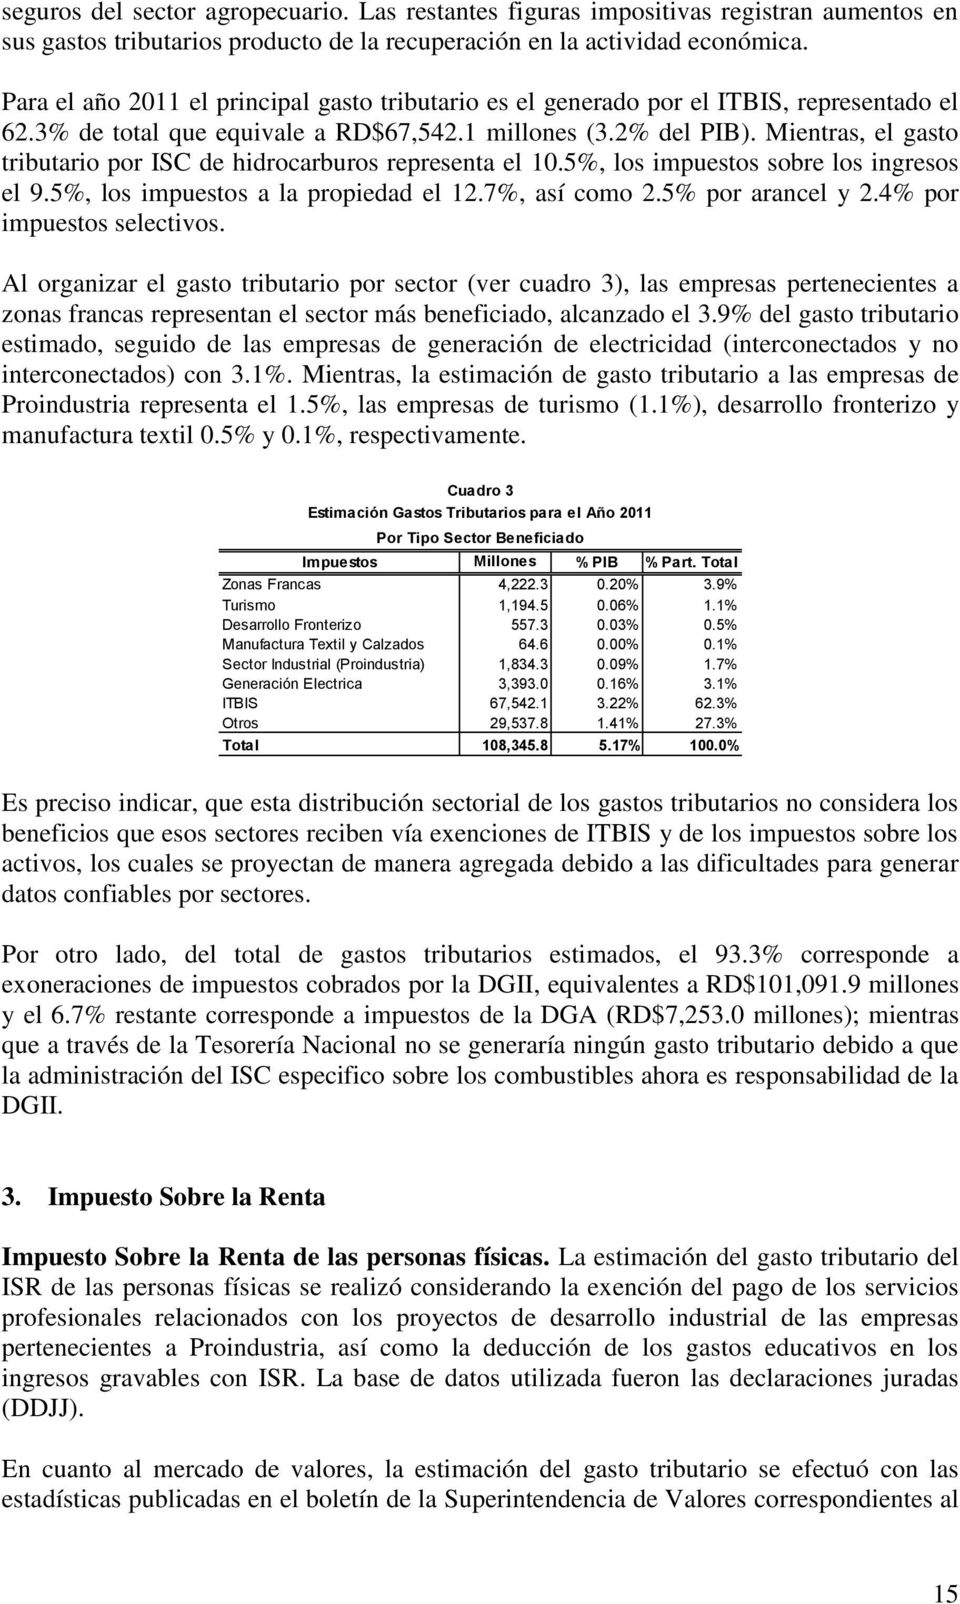 Mientras, el gasto tributario por ISC de hidrocarburos representa el 10.5%, los impuestos sobre los ingresos el 9.5%, los impuestos a la propiedad el 12.7%, así como 2.5% por arancel y 2.